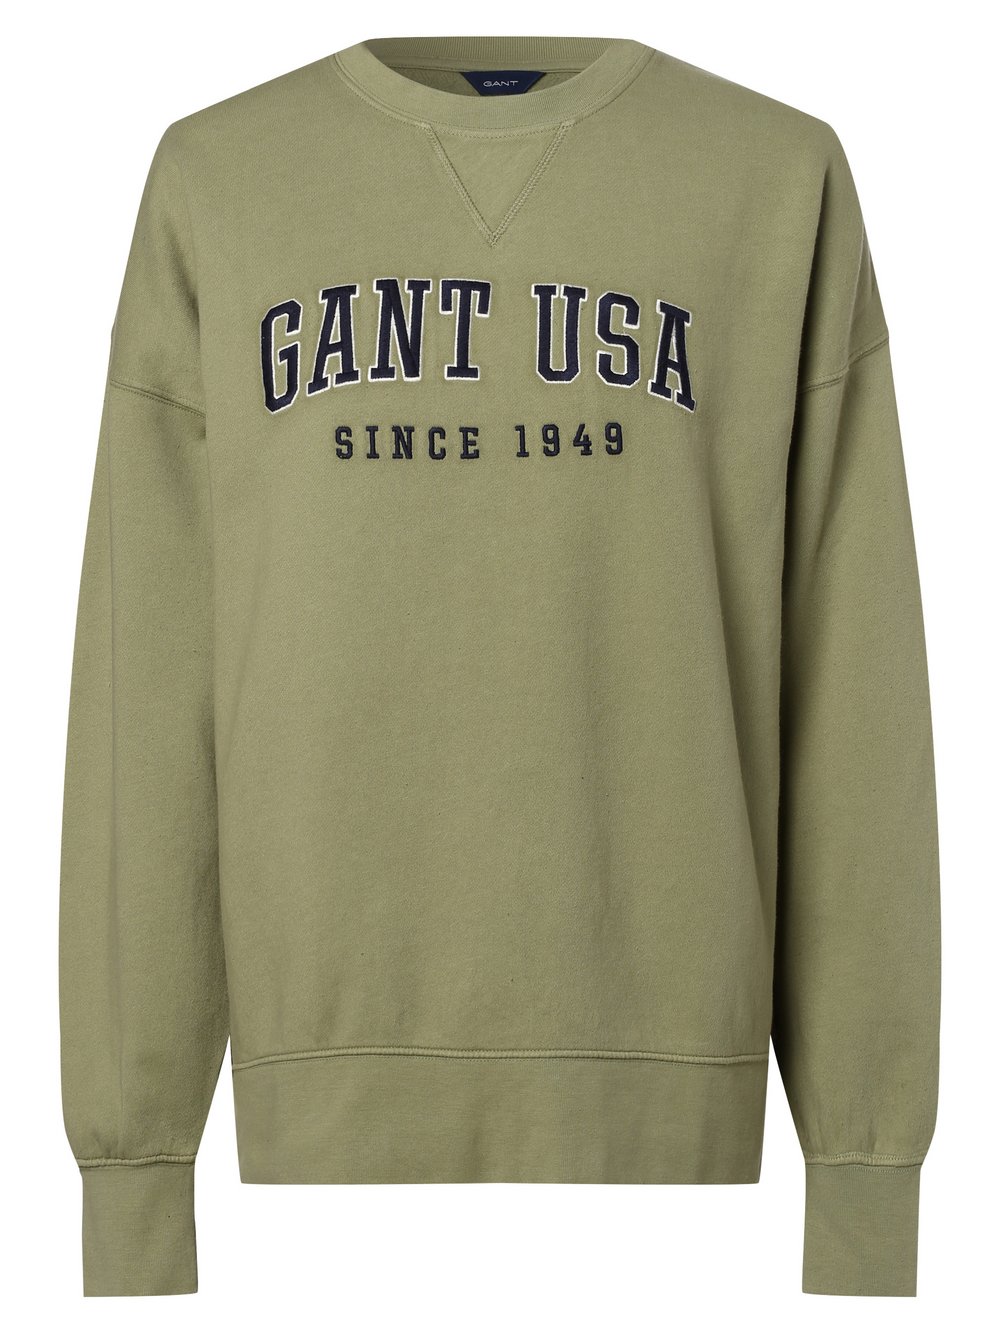 Gant - Damska bluza nierozpinana, zielony